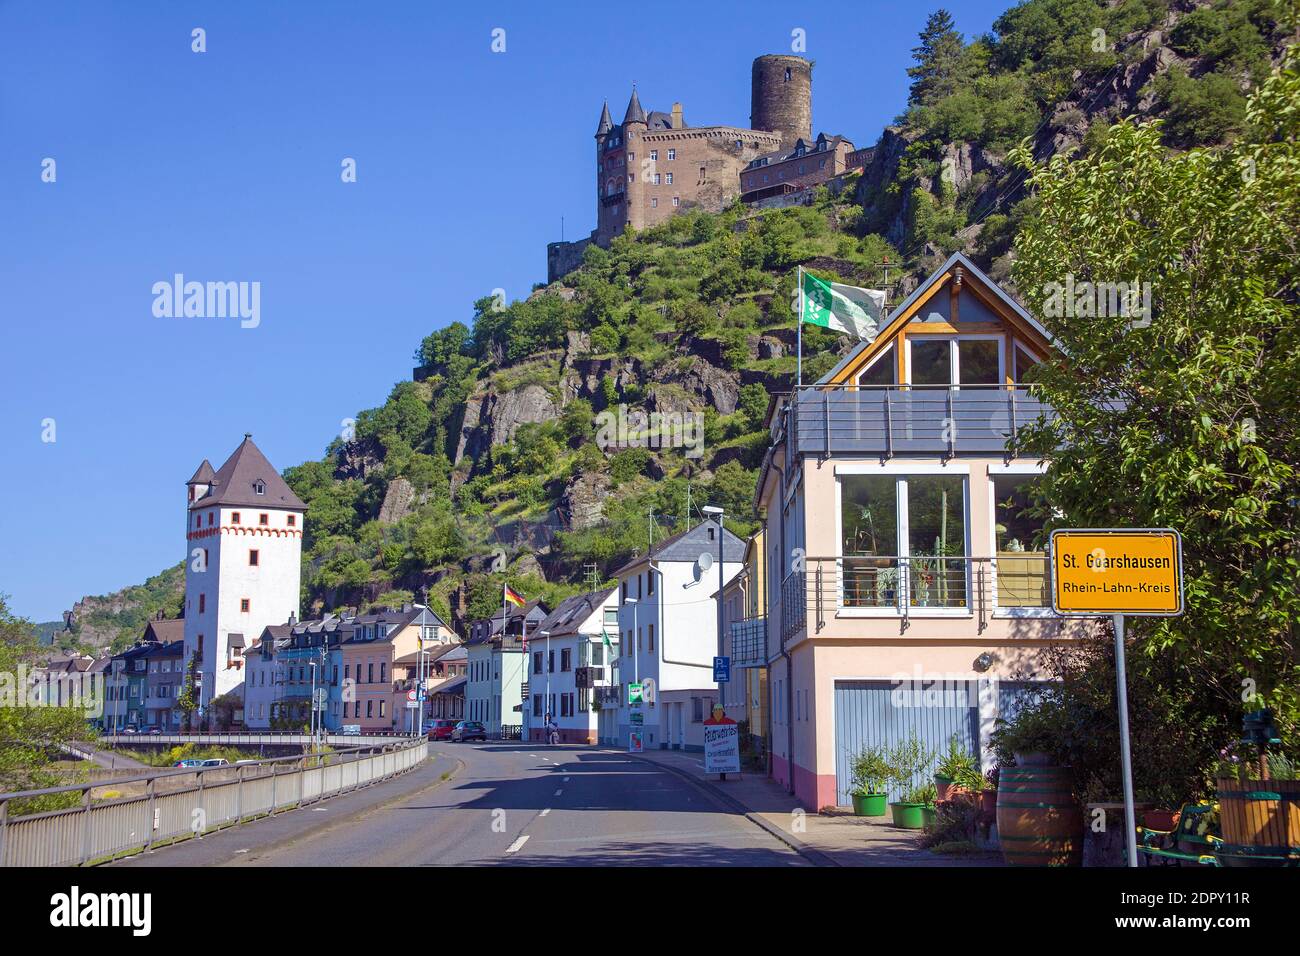 St. Goarshausen con torre quadrata e castello di Katz (Burg Katz), patrimonio dell'umanità dell'UNESCO, alta Valle del Medio Reno, Germania Foto Stock